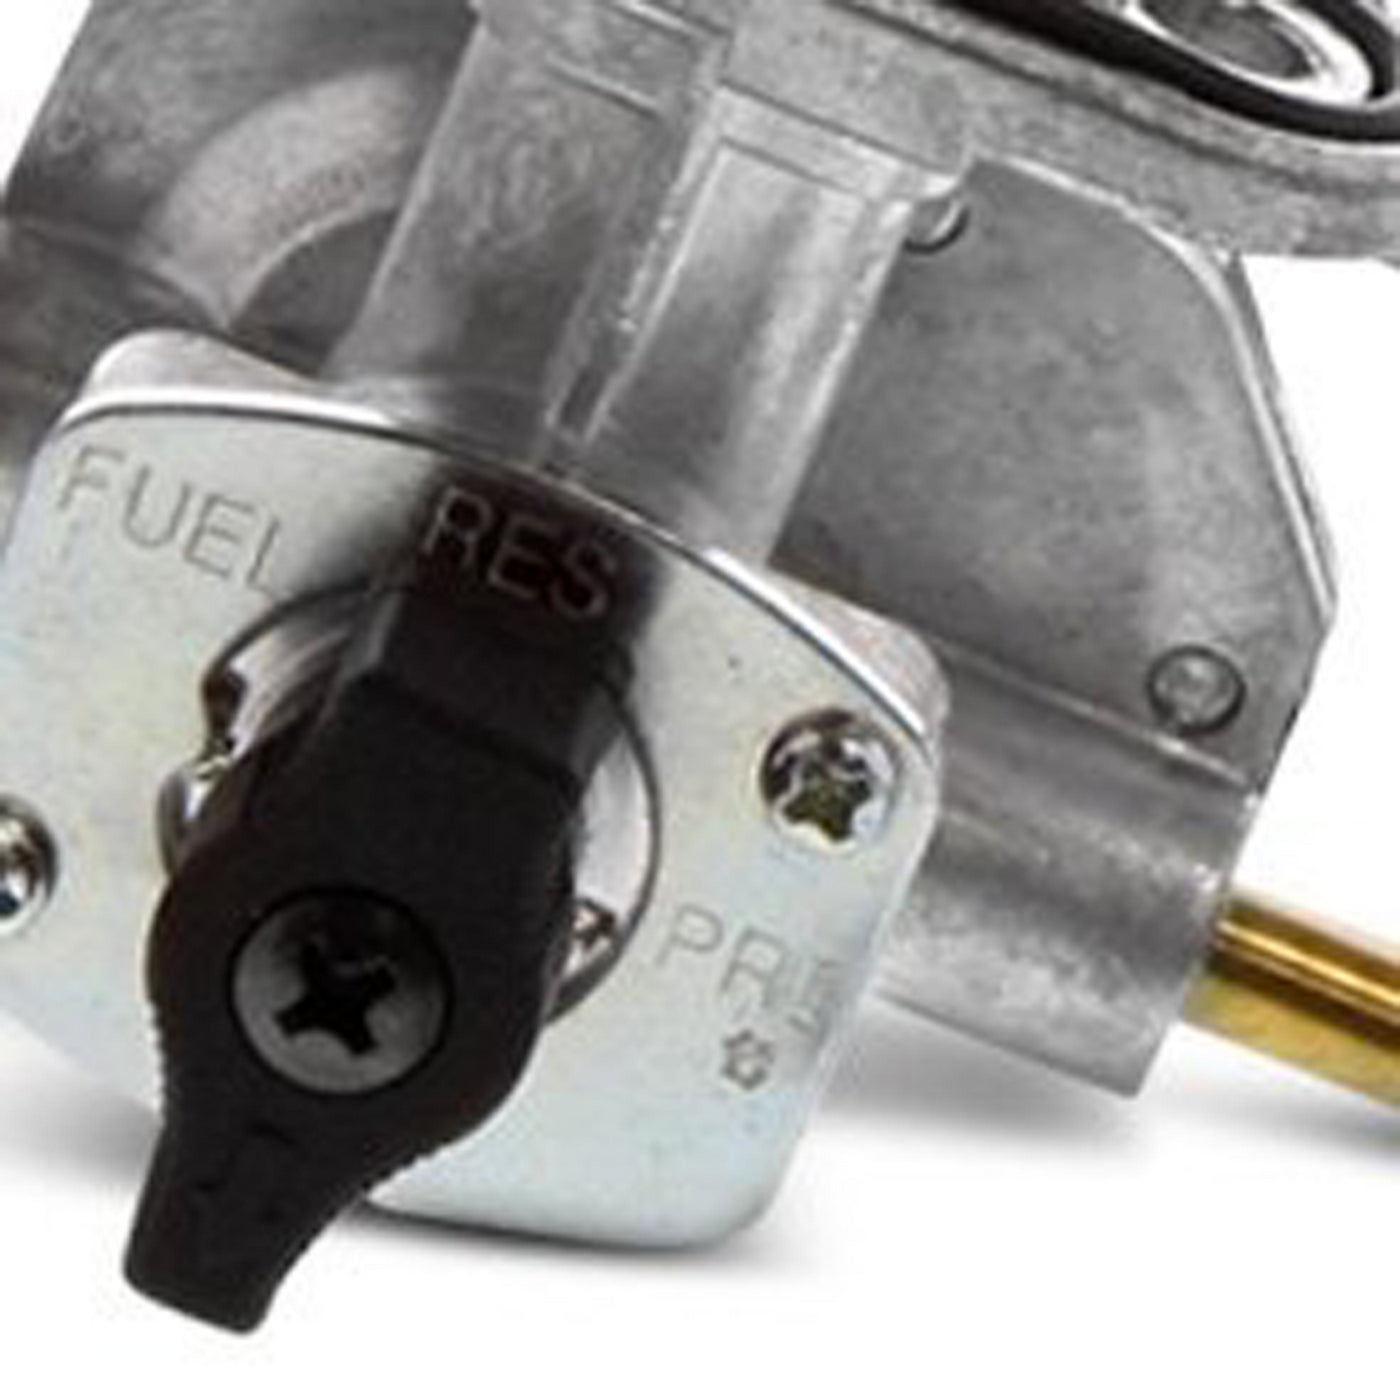 Fuel Star FS101-0137 Fuel Valve Kit #FS101-0137